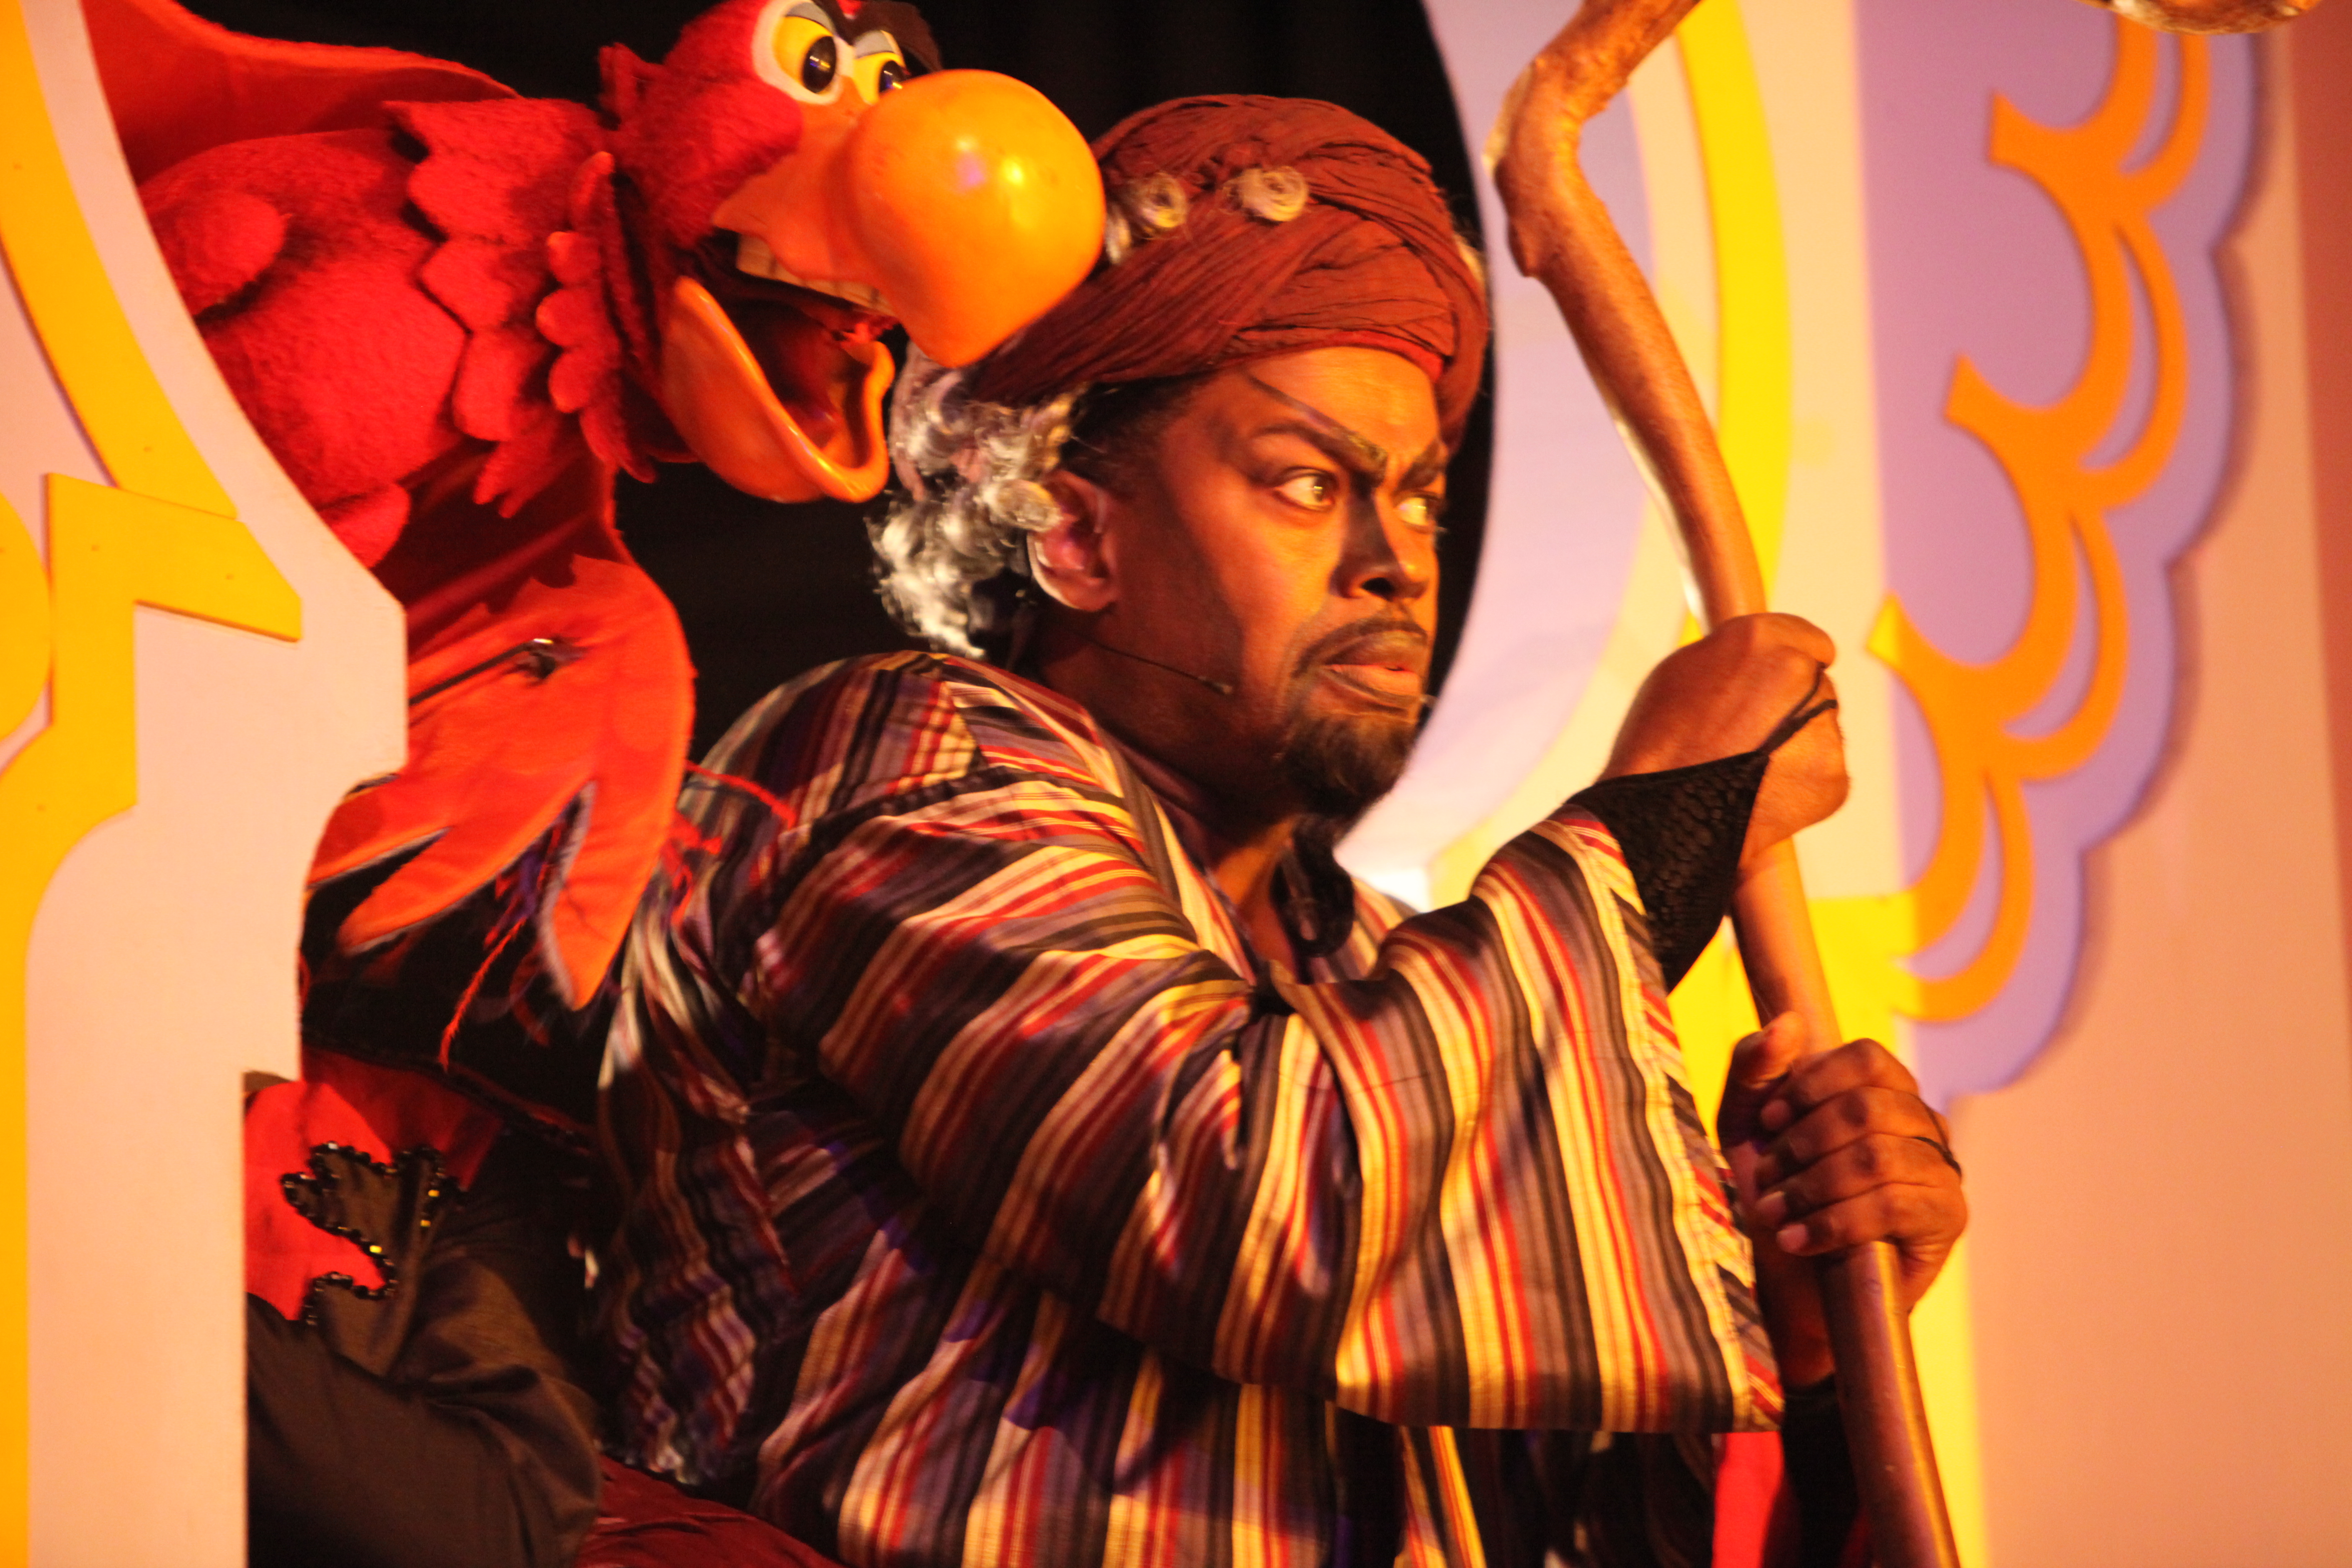 Lance Roberts as Jafar (Old man) in Disney's stage version of 